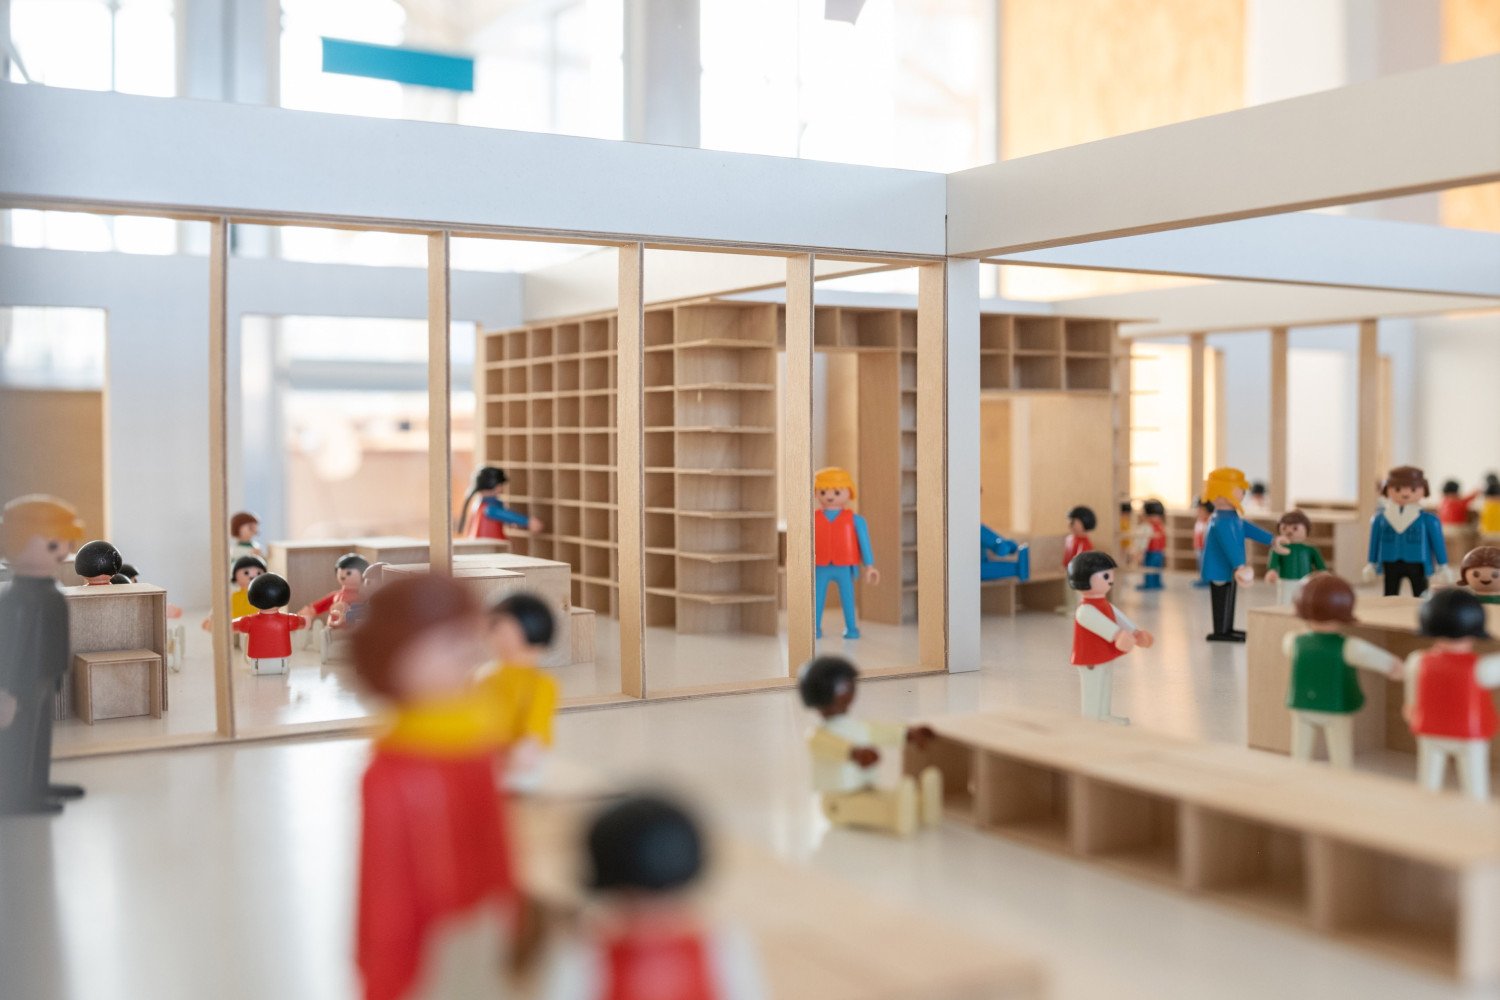 Holzmodell eines Lernlofts mit Figuren.